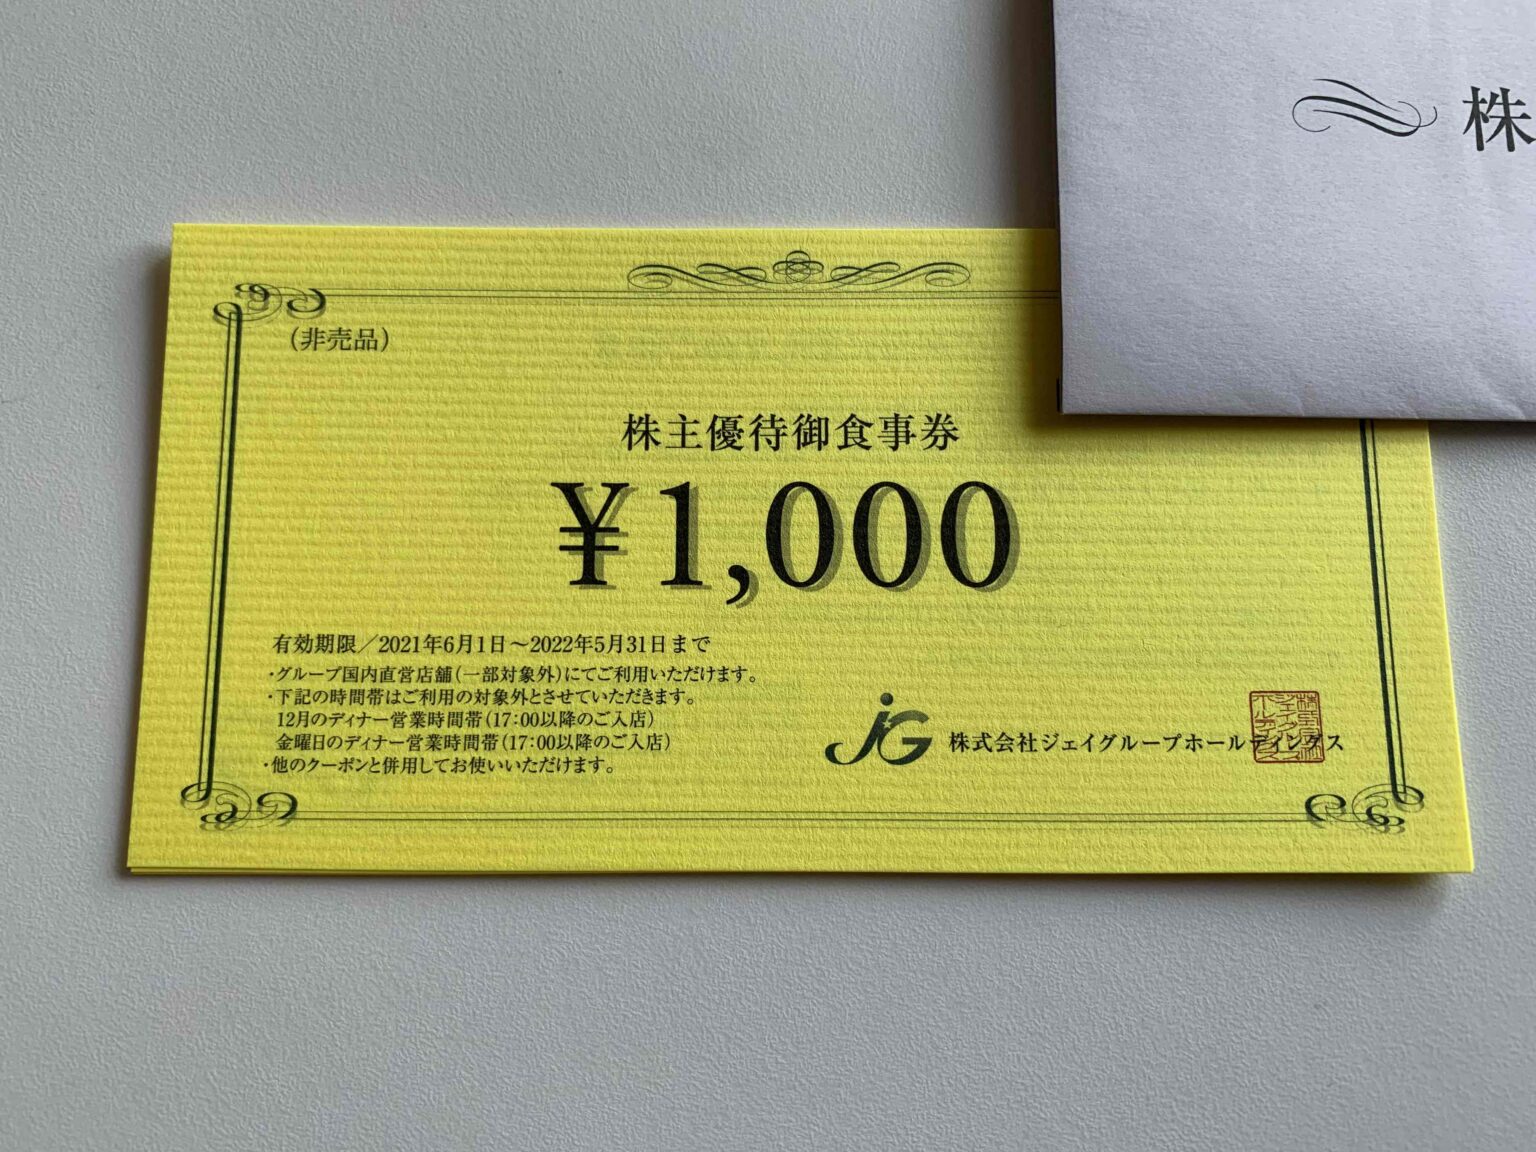 ジェイグループホールディングス 15,000円分優待券/割引券